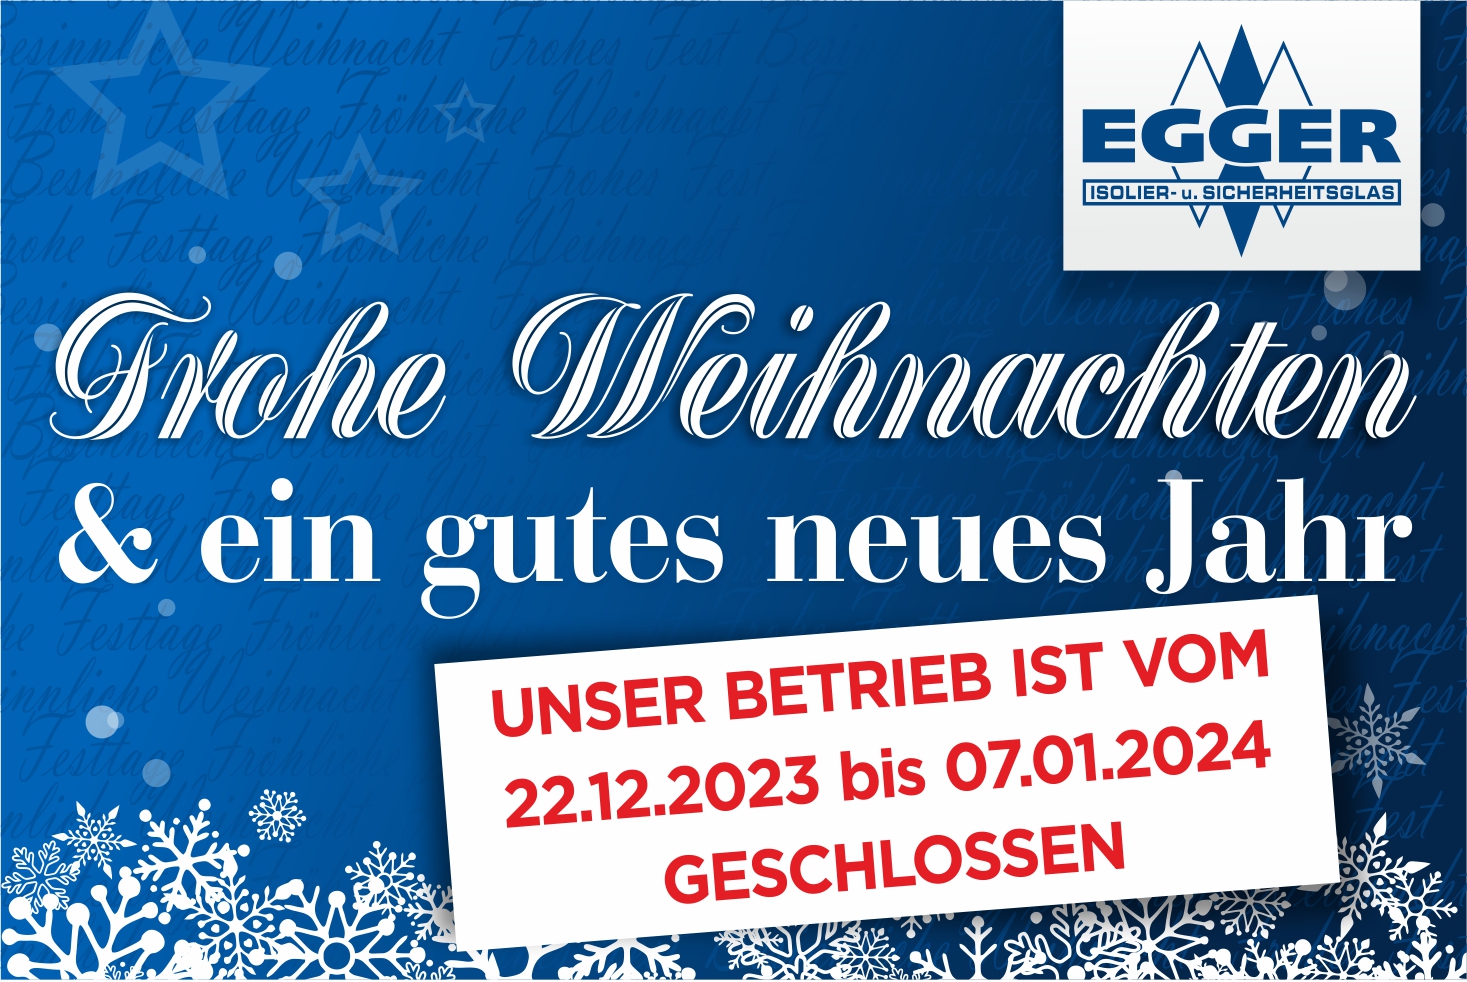 egger_glas_weihnacht_web